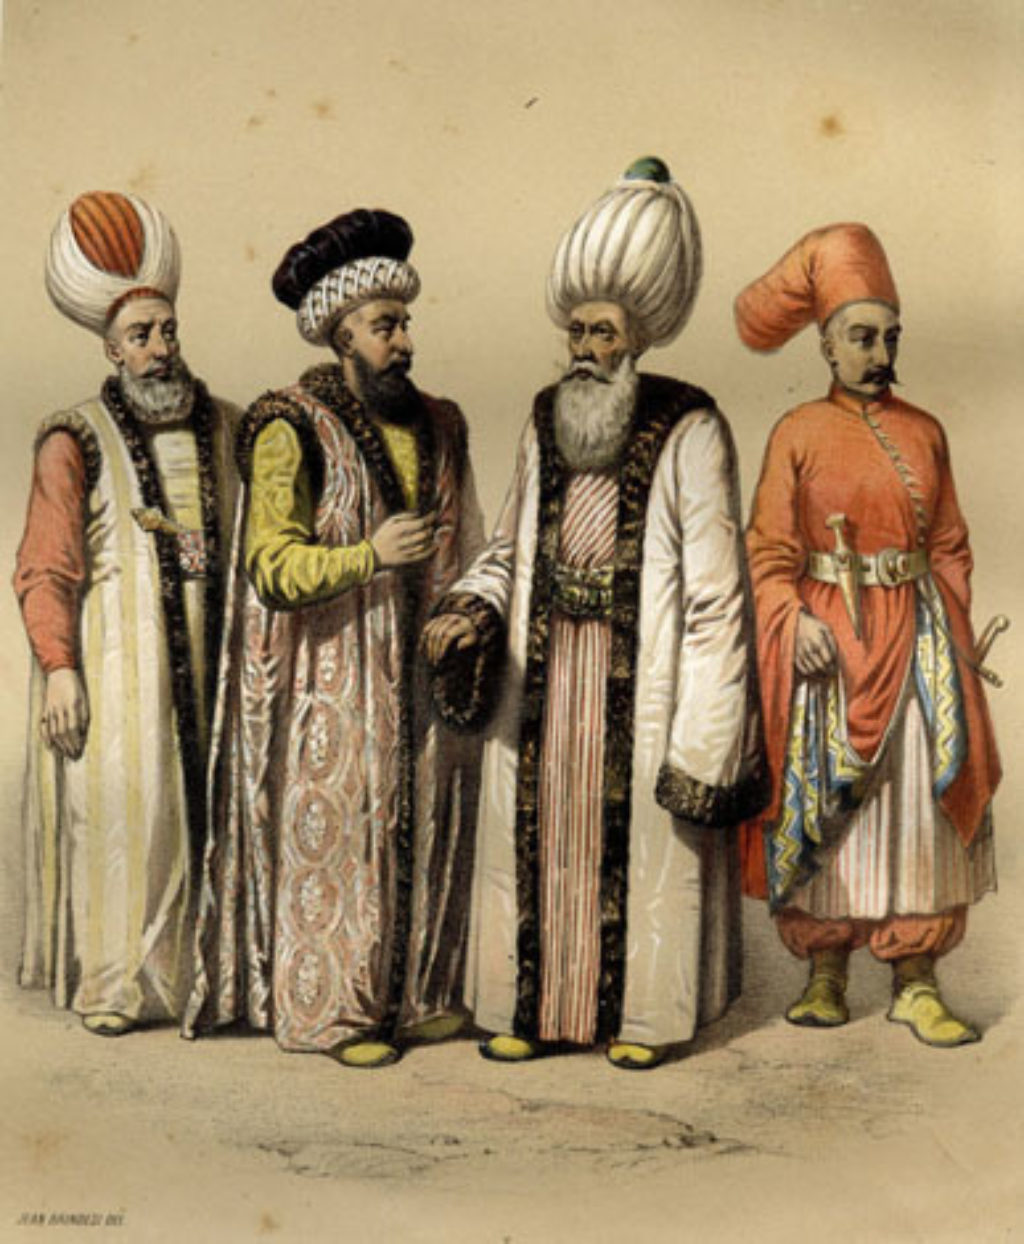 Ottoman officials